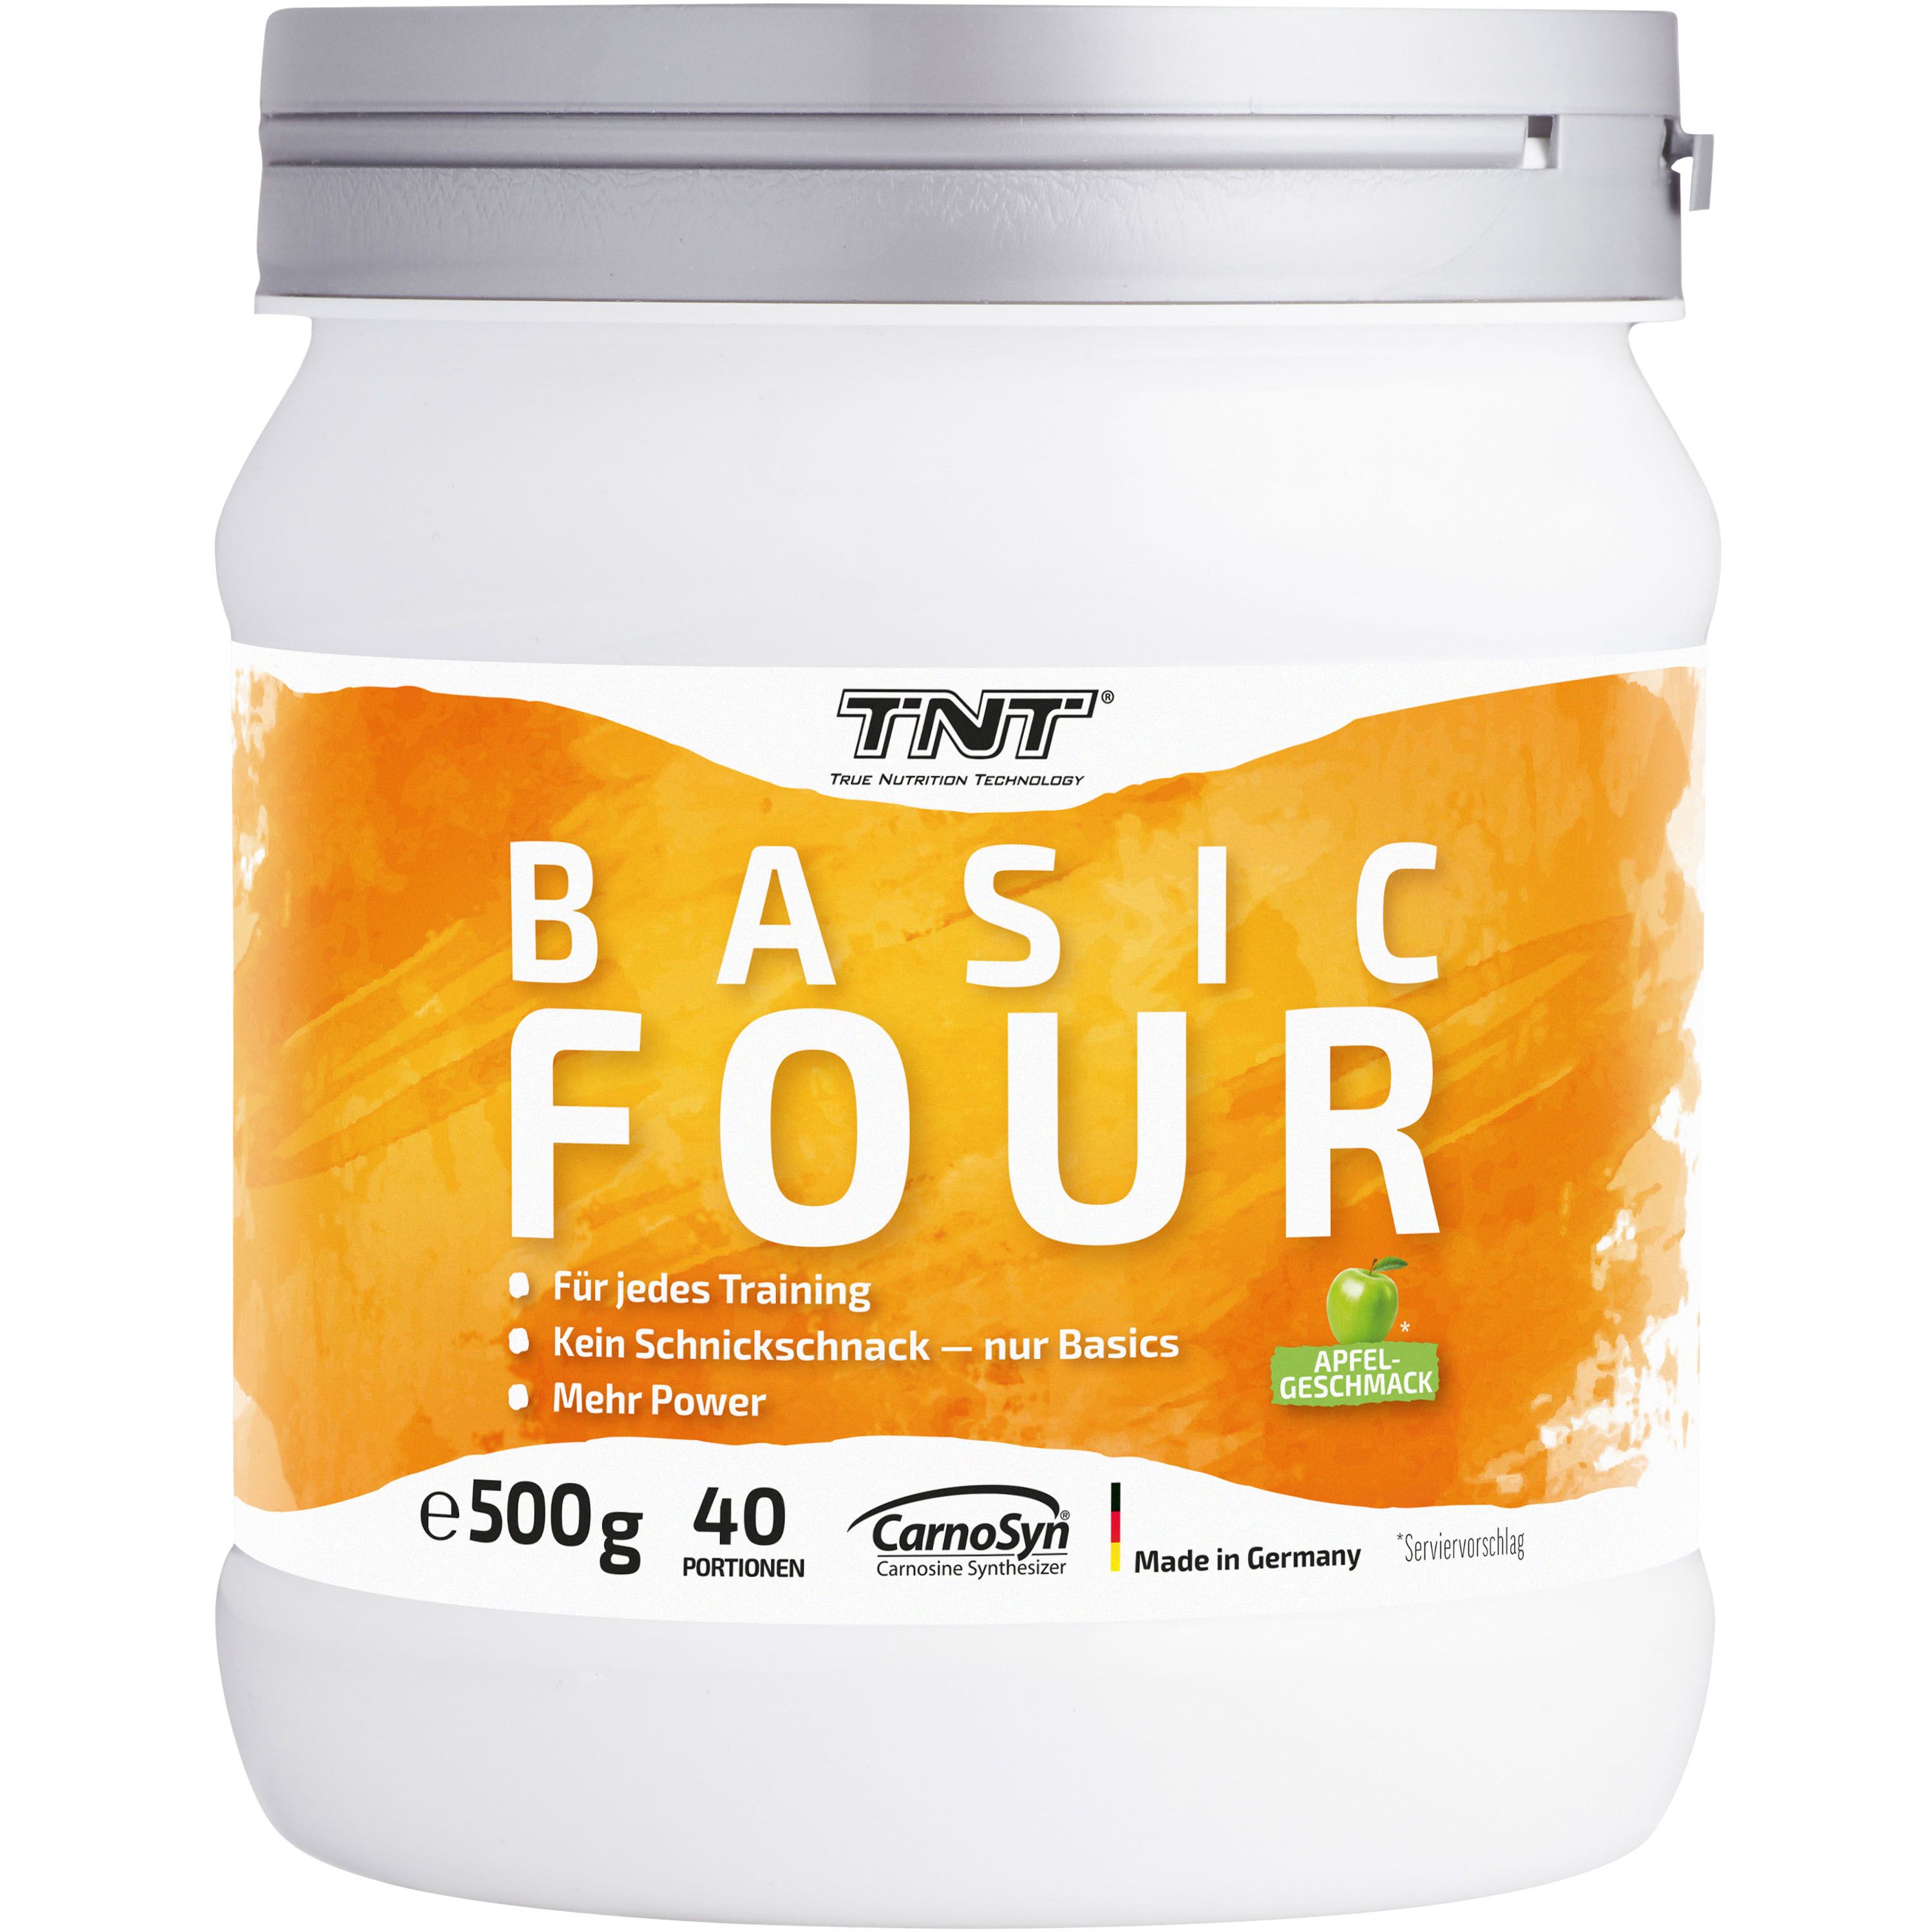 TNT Basic Four, Trainingsbooster mit 4 wirkungsvollen Zutaten im Apfel Geschmack